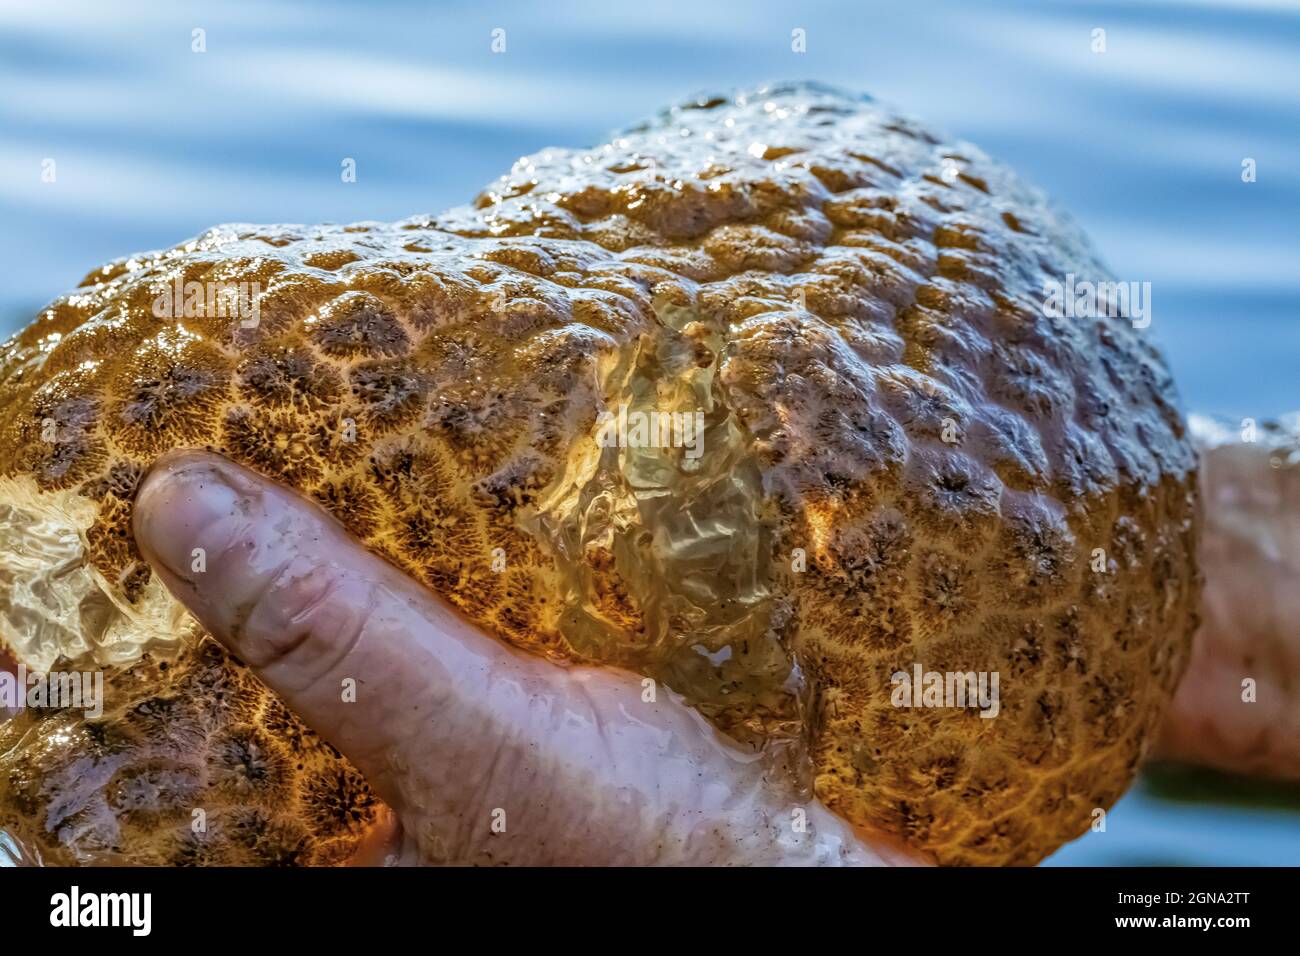 Süßwasser-Bryozoan, Pectinatella magnifica, mit einer Störung, die das gallertartige Innere zeigt, im Fawn Lake auf der Olympic Peninsula, Washington Stat Stockfoto